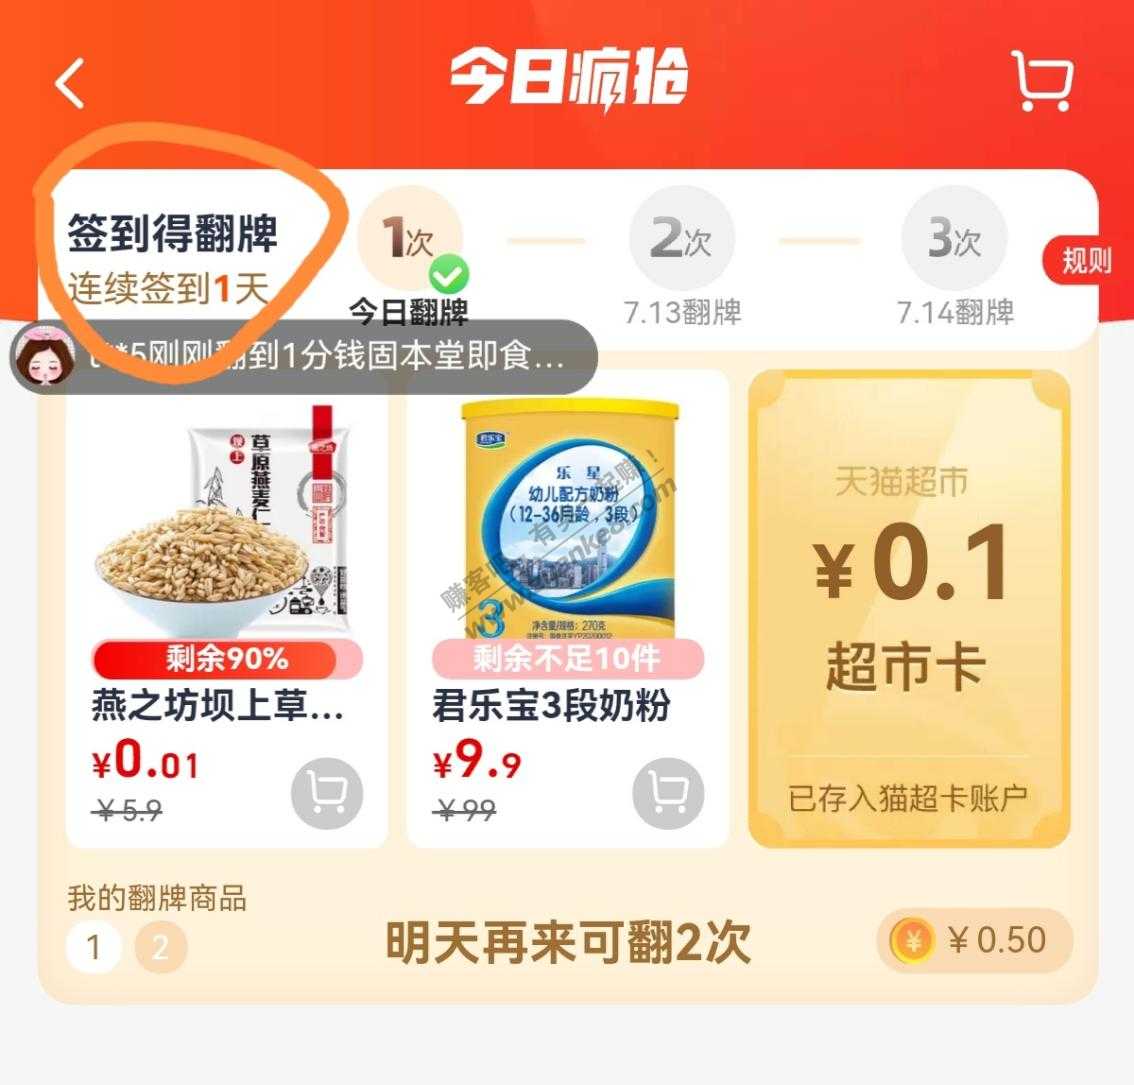 猫超1分商品方法分享-惠小助(52huixz.com)